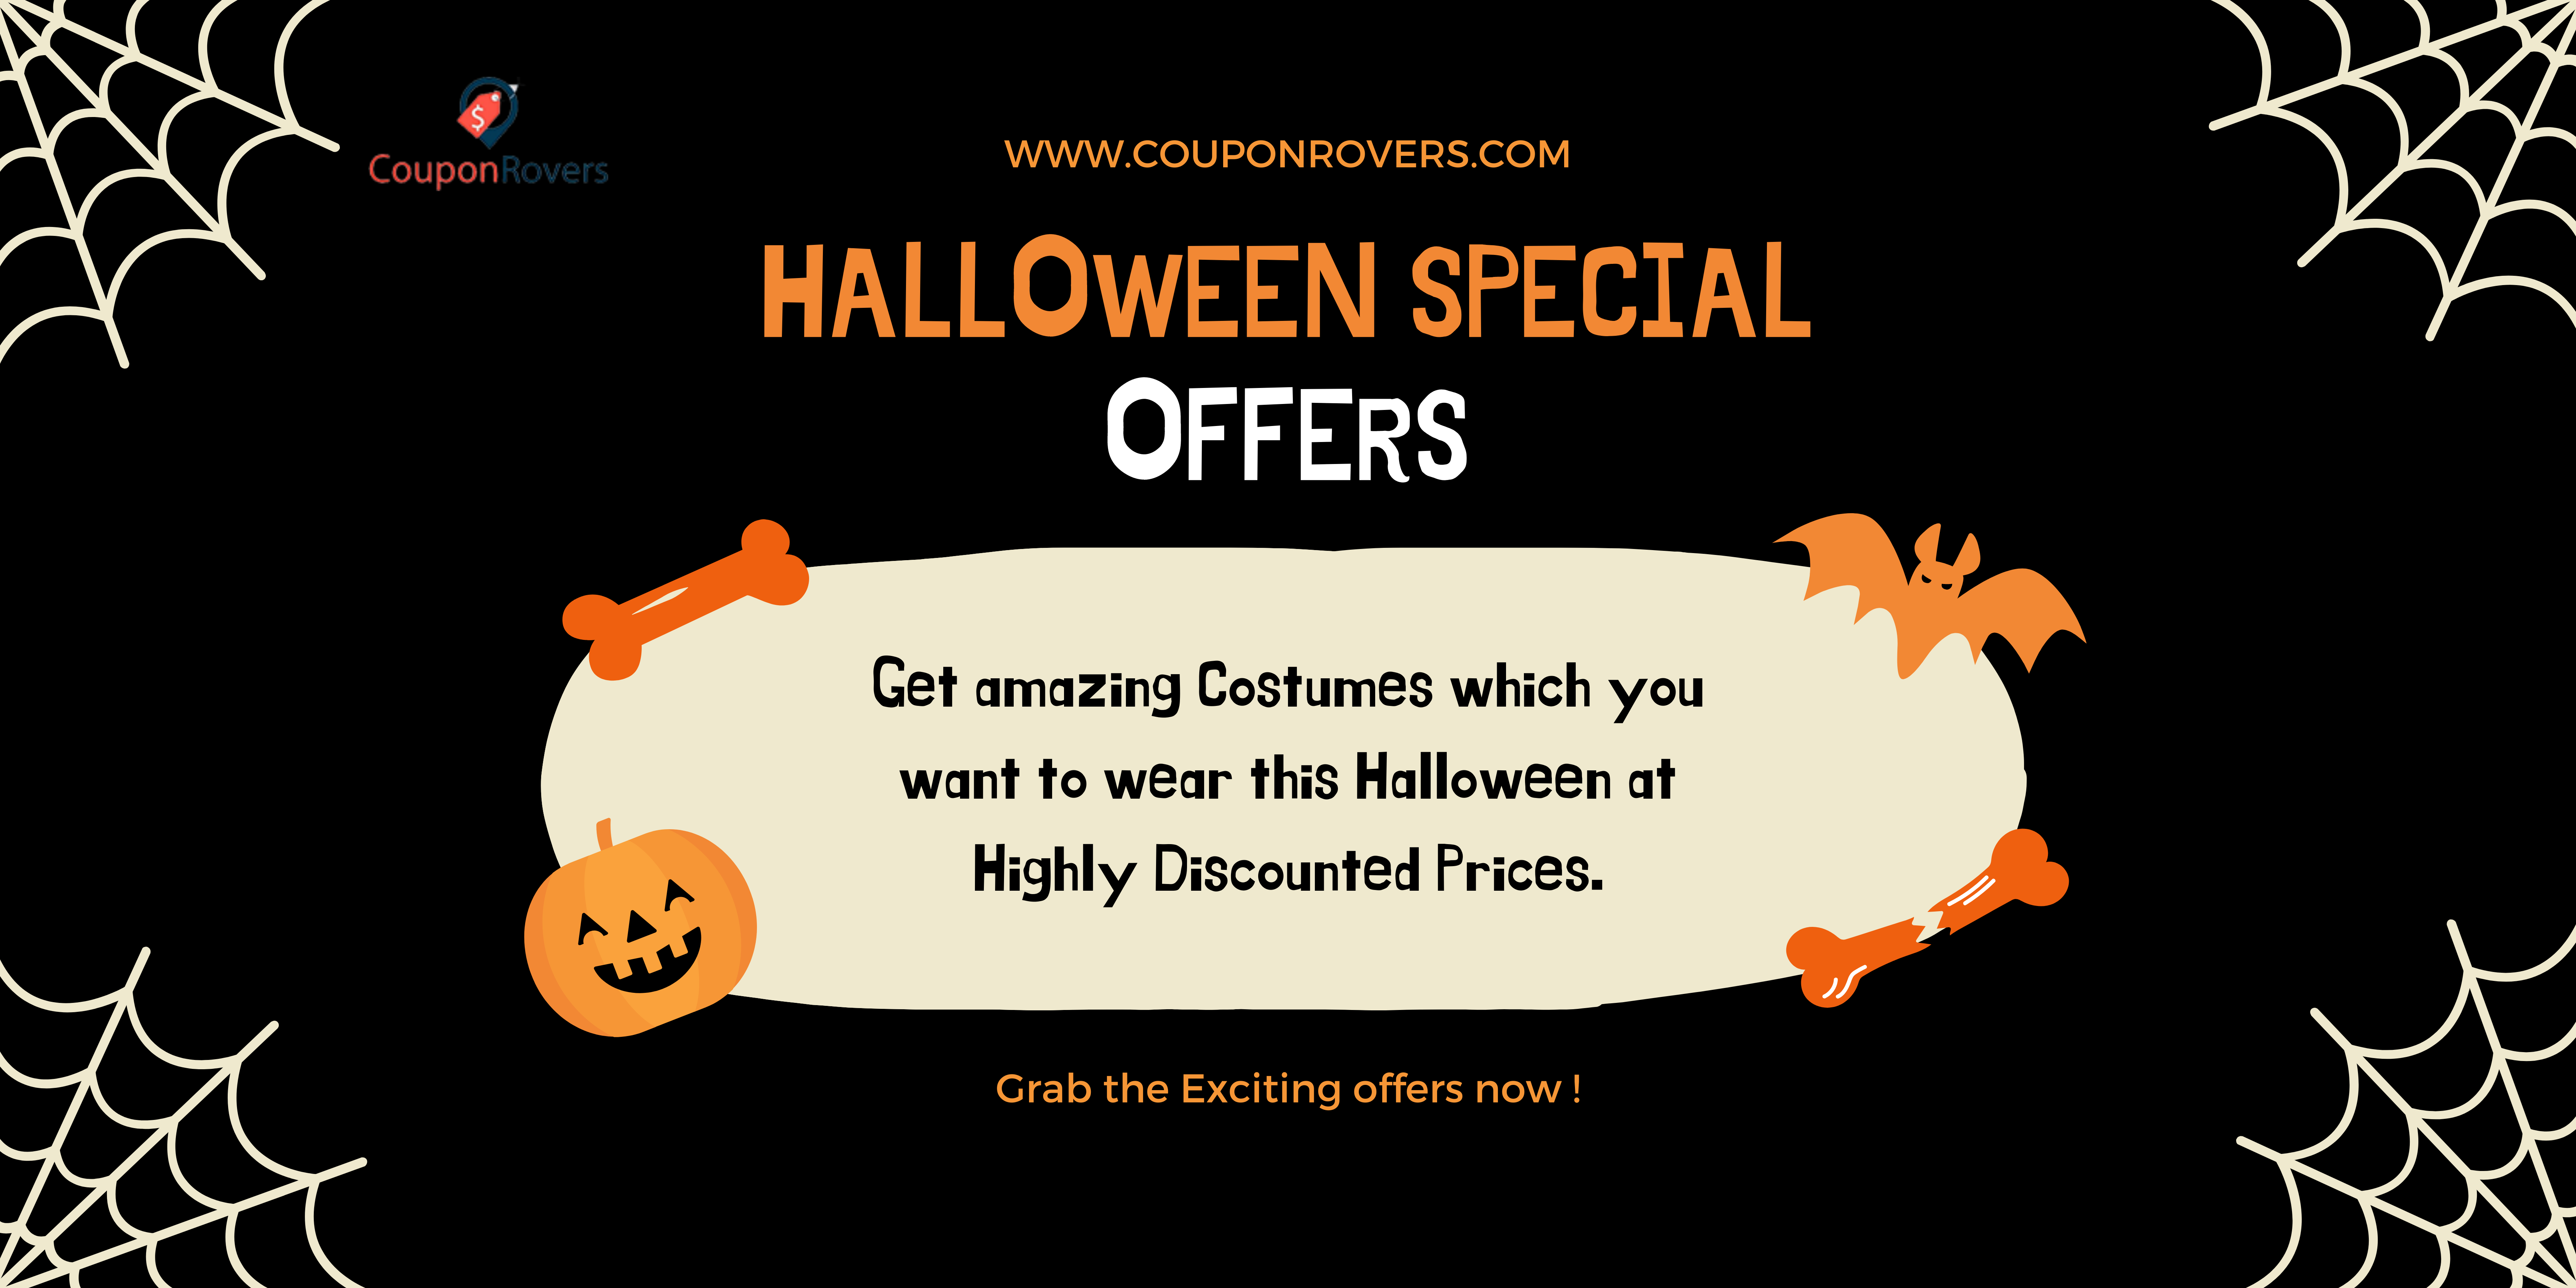 5 Best Online Halloween Stores to Buy Costumes